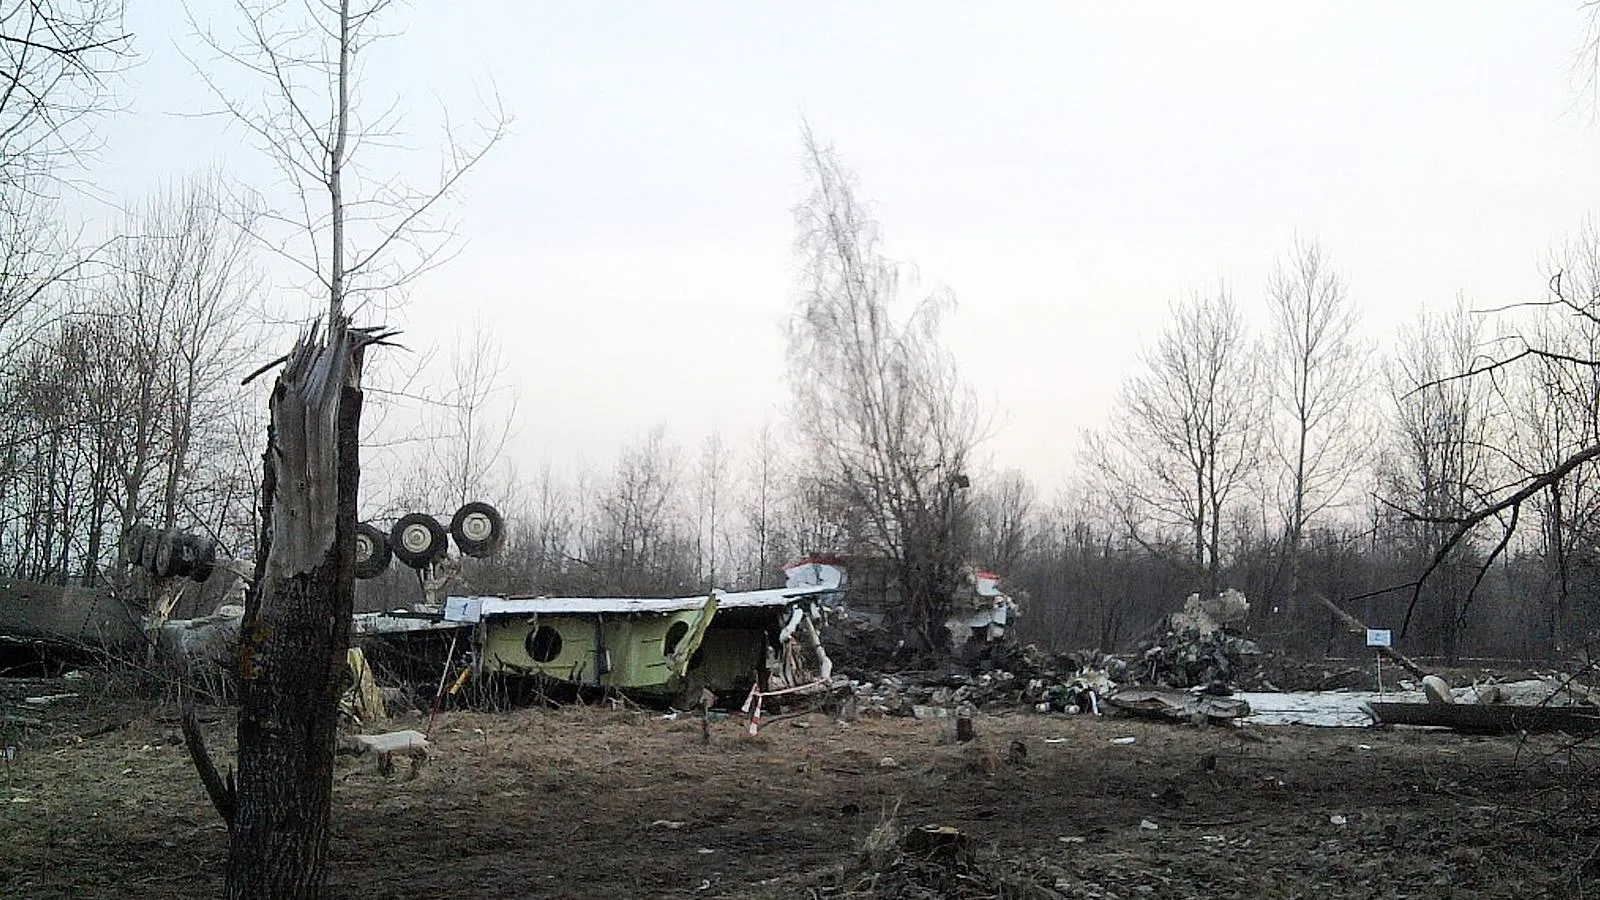 Обломки самолет президентской делегации Ту-154М Воздушных сил Польши, 2010 год